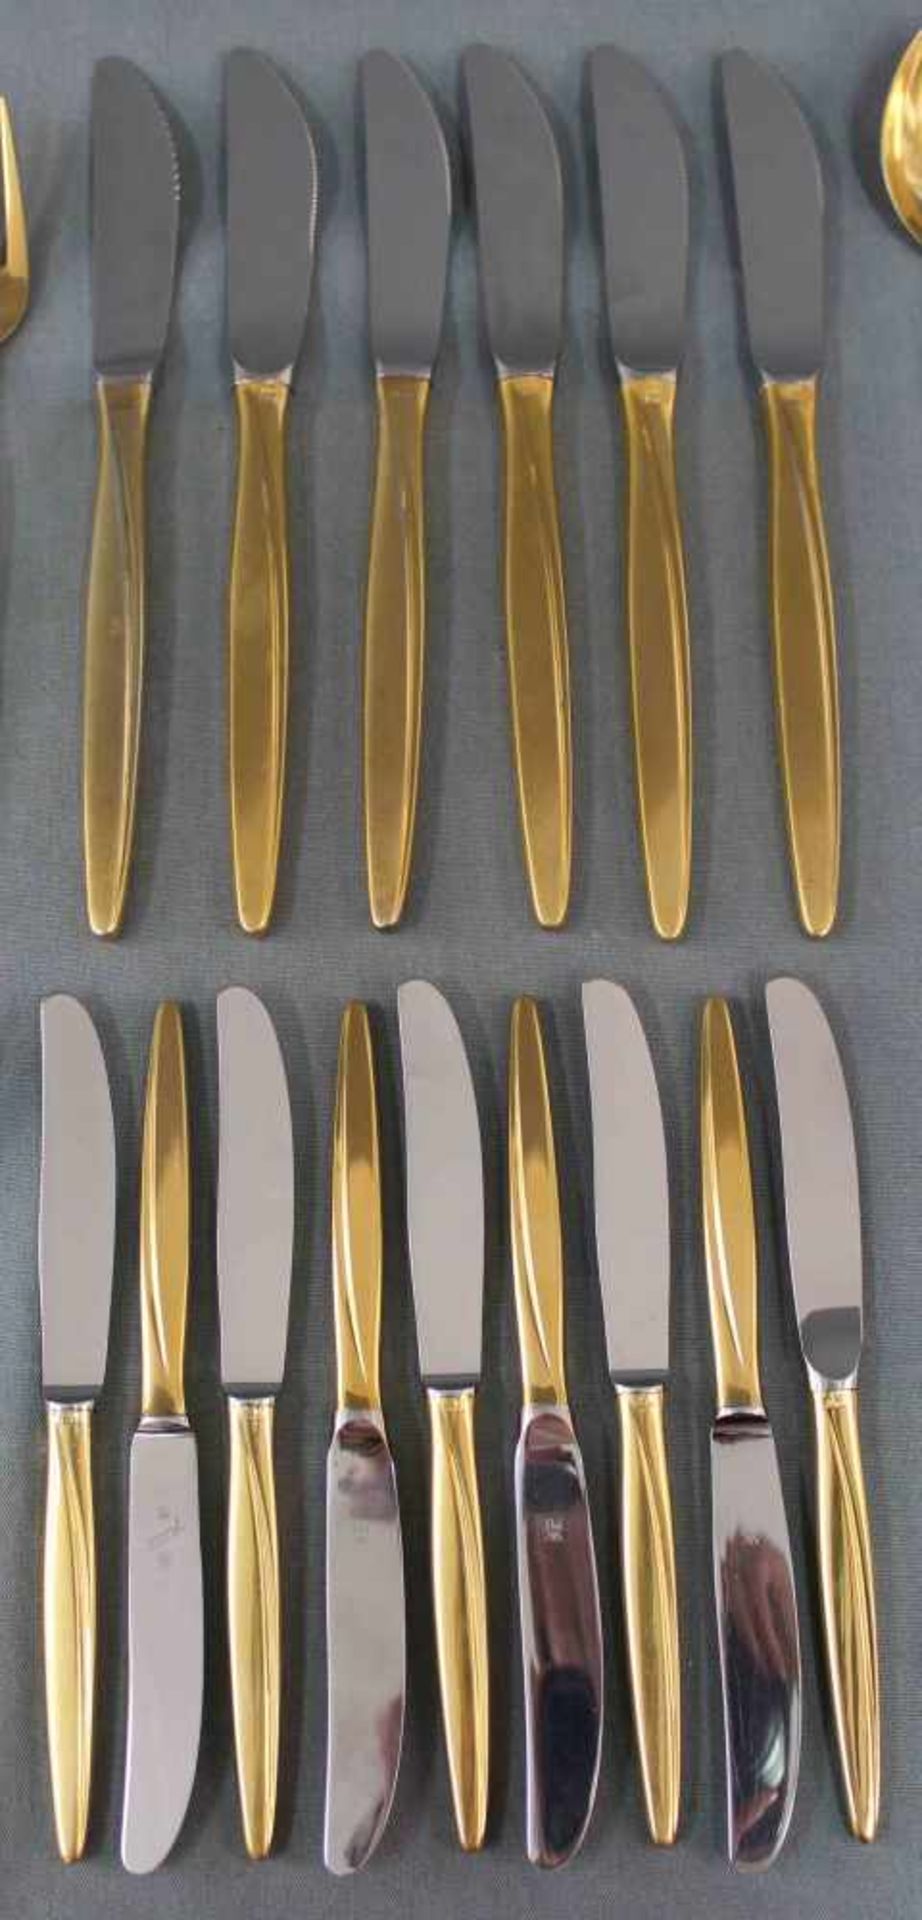 WMF Besteck Silber 800, vergoldet.1311 Gramm (gewogen ohne Messer).WMF Cutlery Silver 800, gilded. - Image 3 of 13